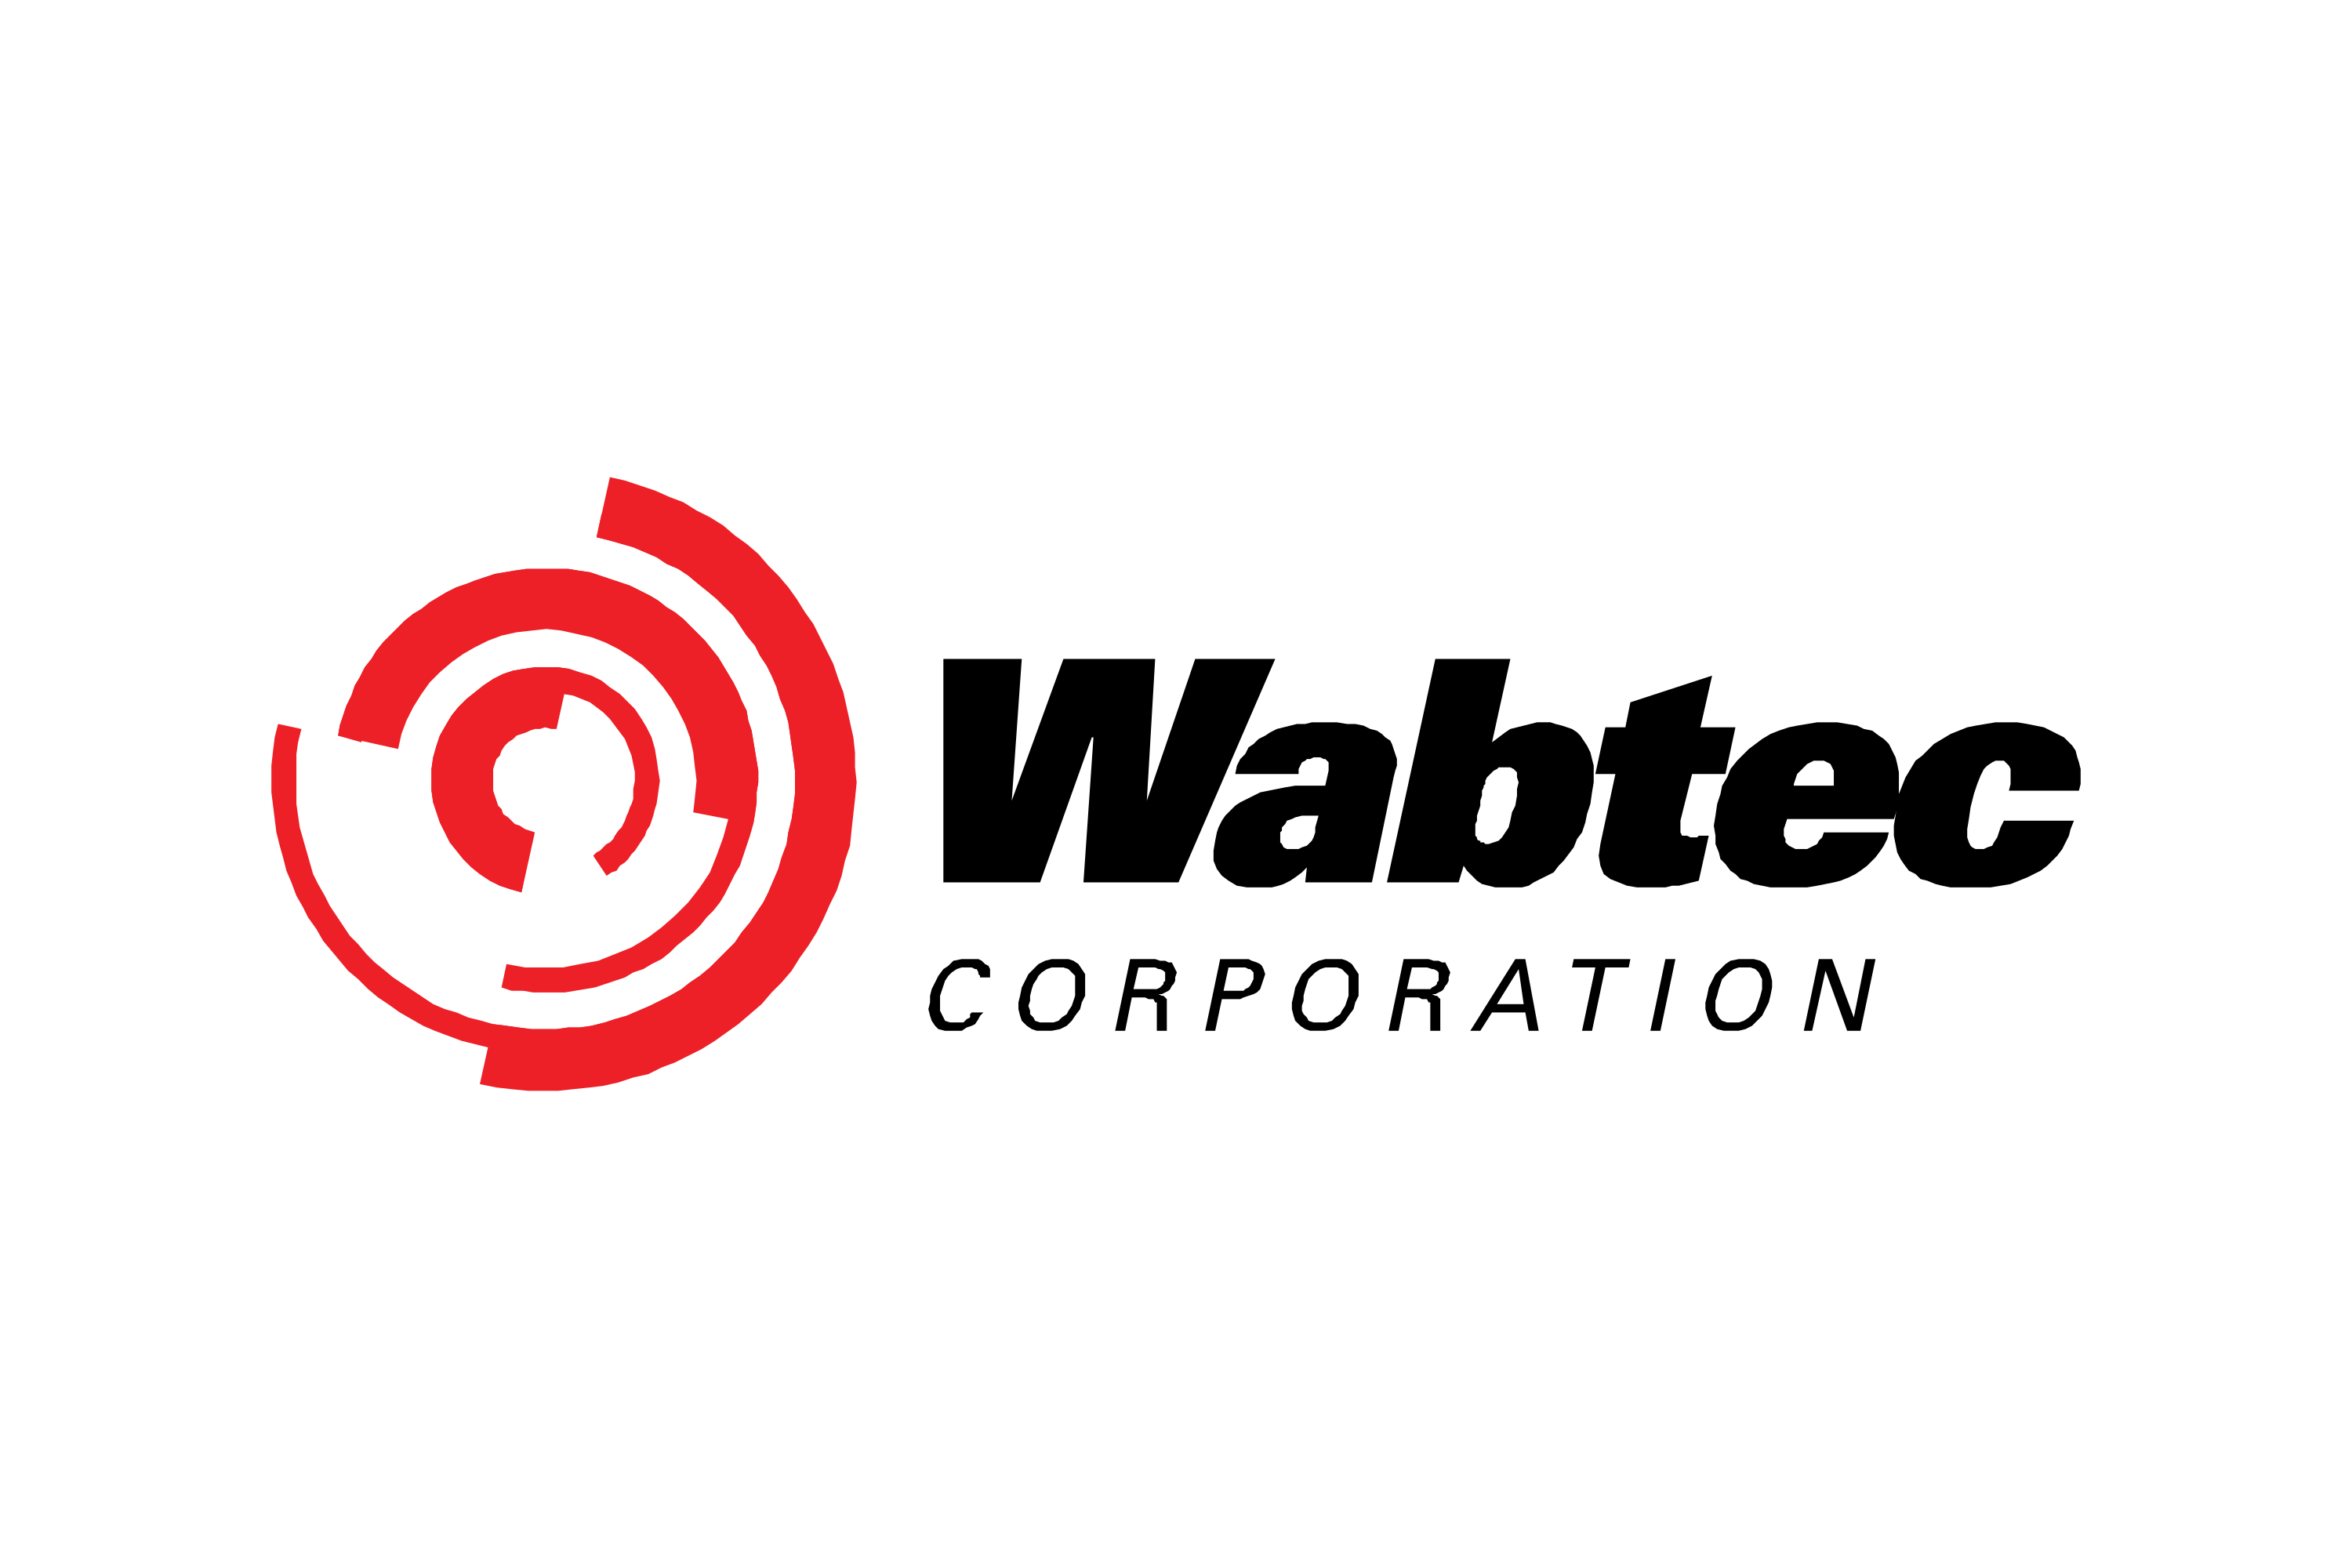 Wabtec Logo